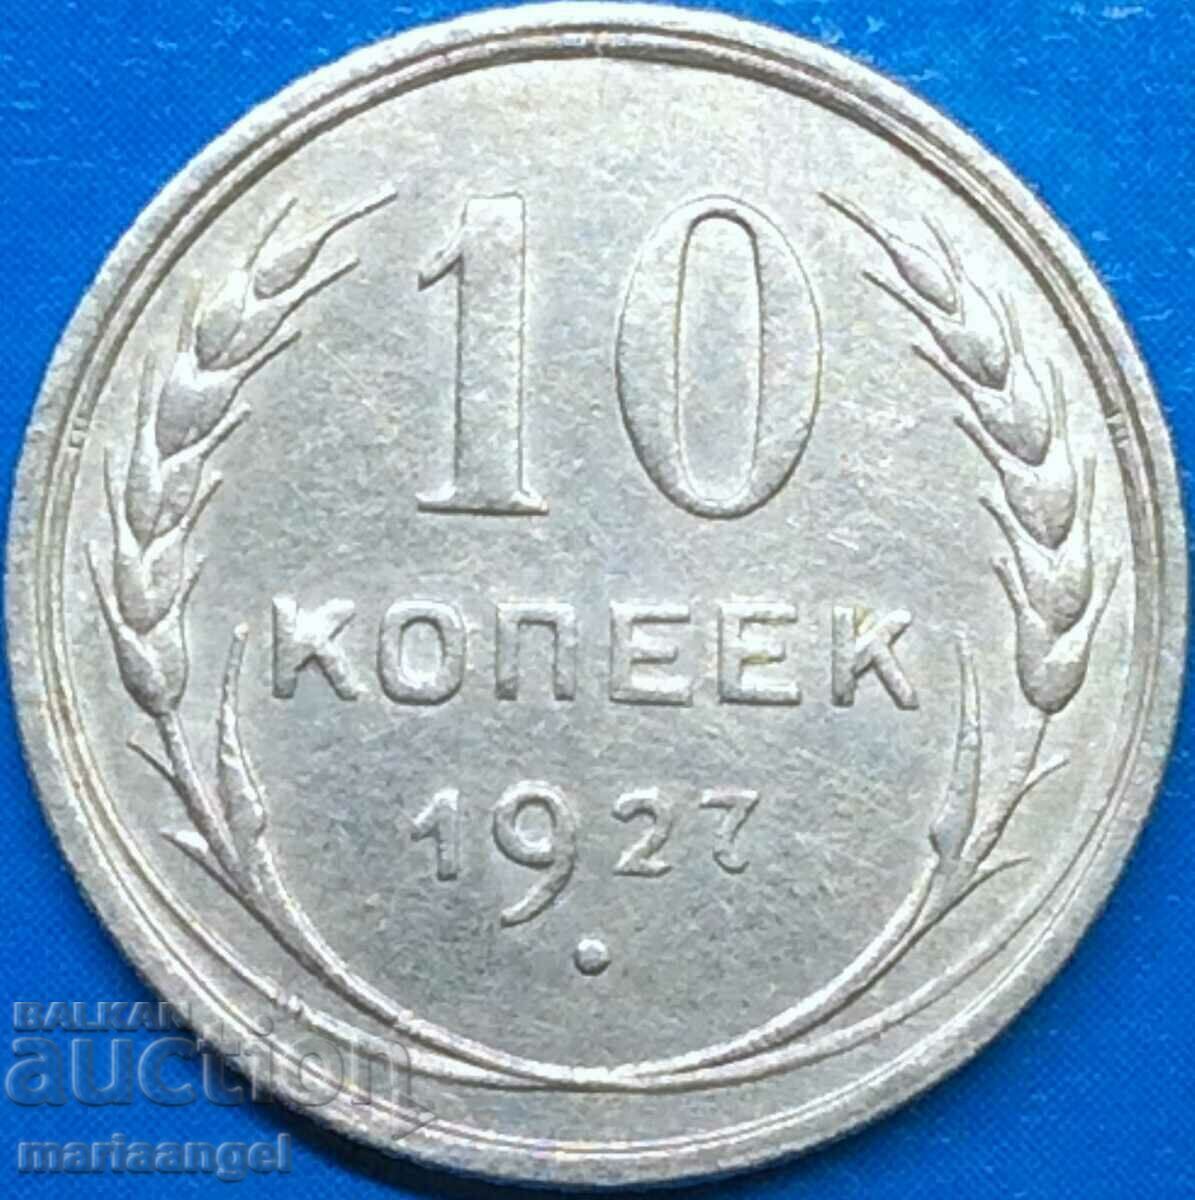 10 kopecks 1927 Russia USSR silver